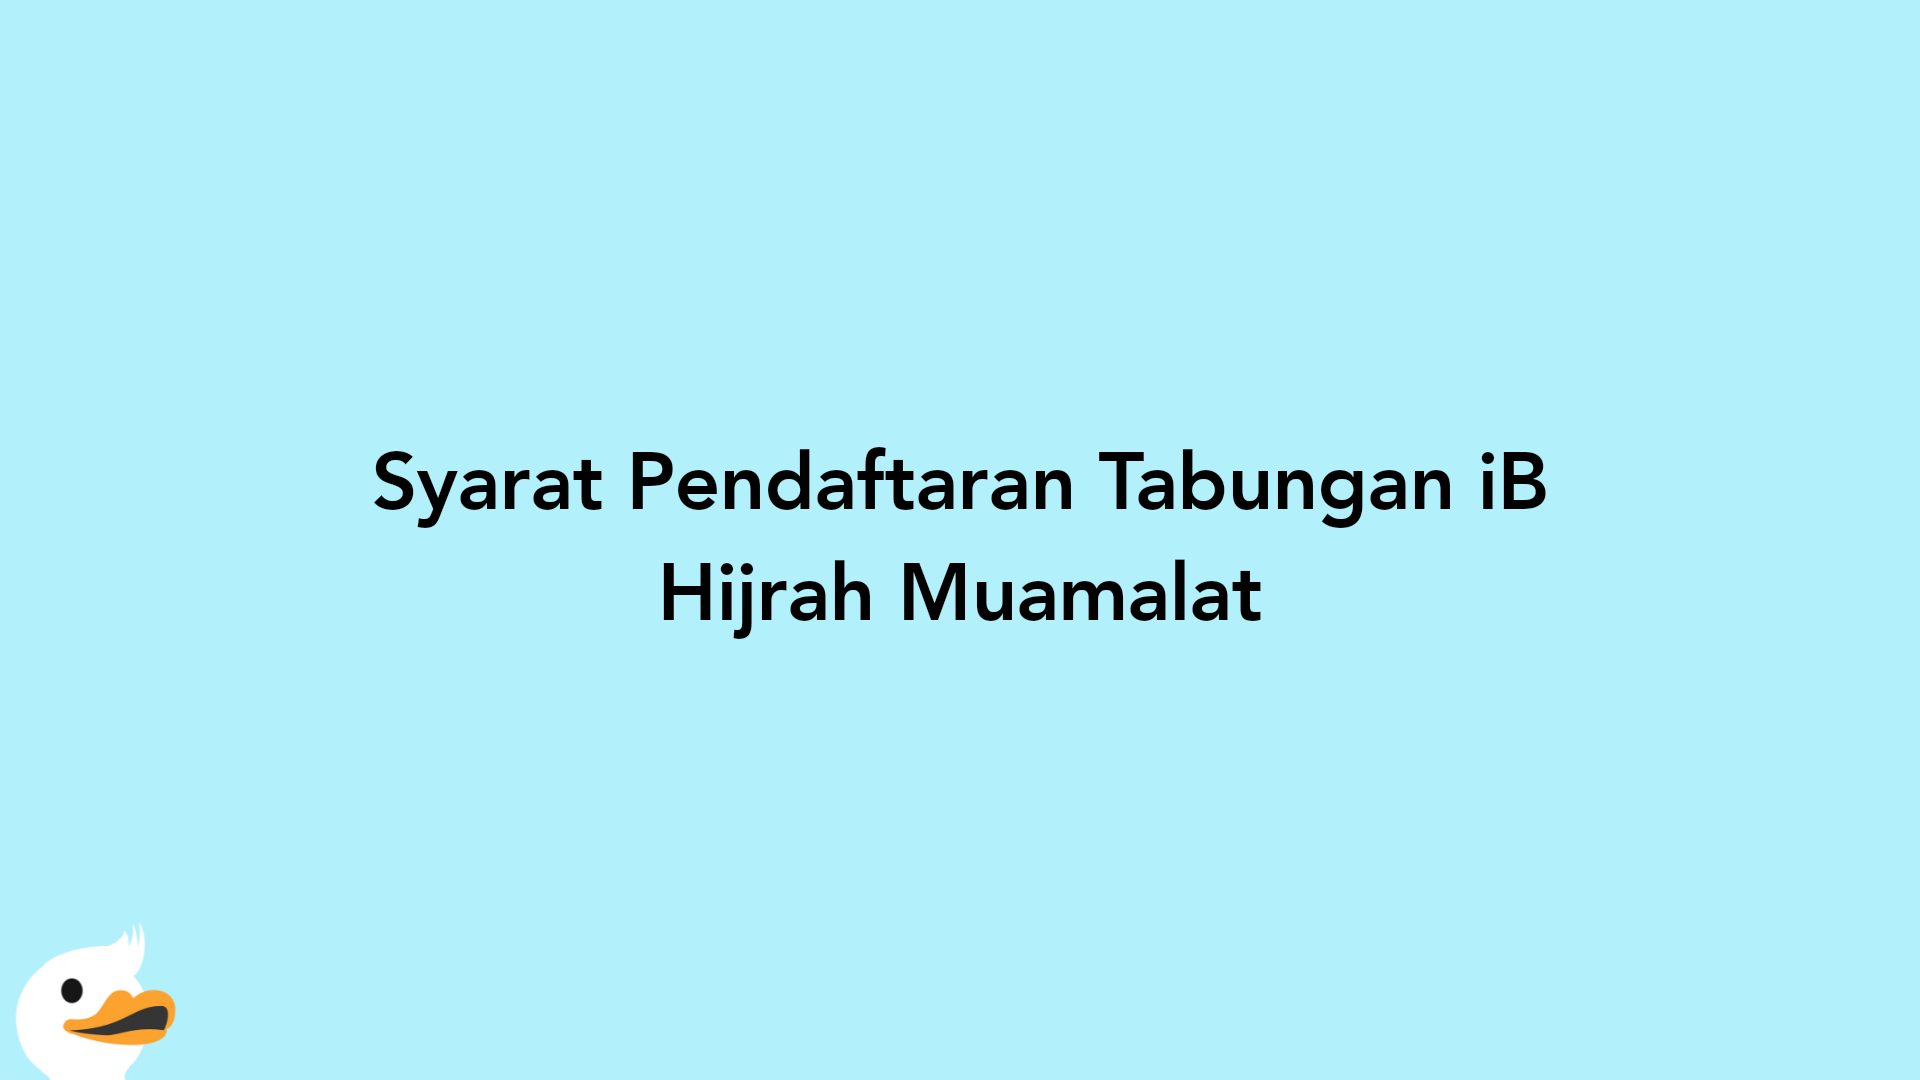 Syarat Pendaftaran Tabungan iB Hijrah Muamalat